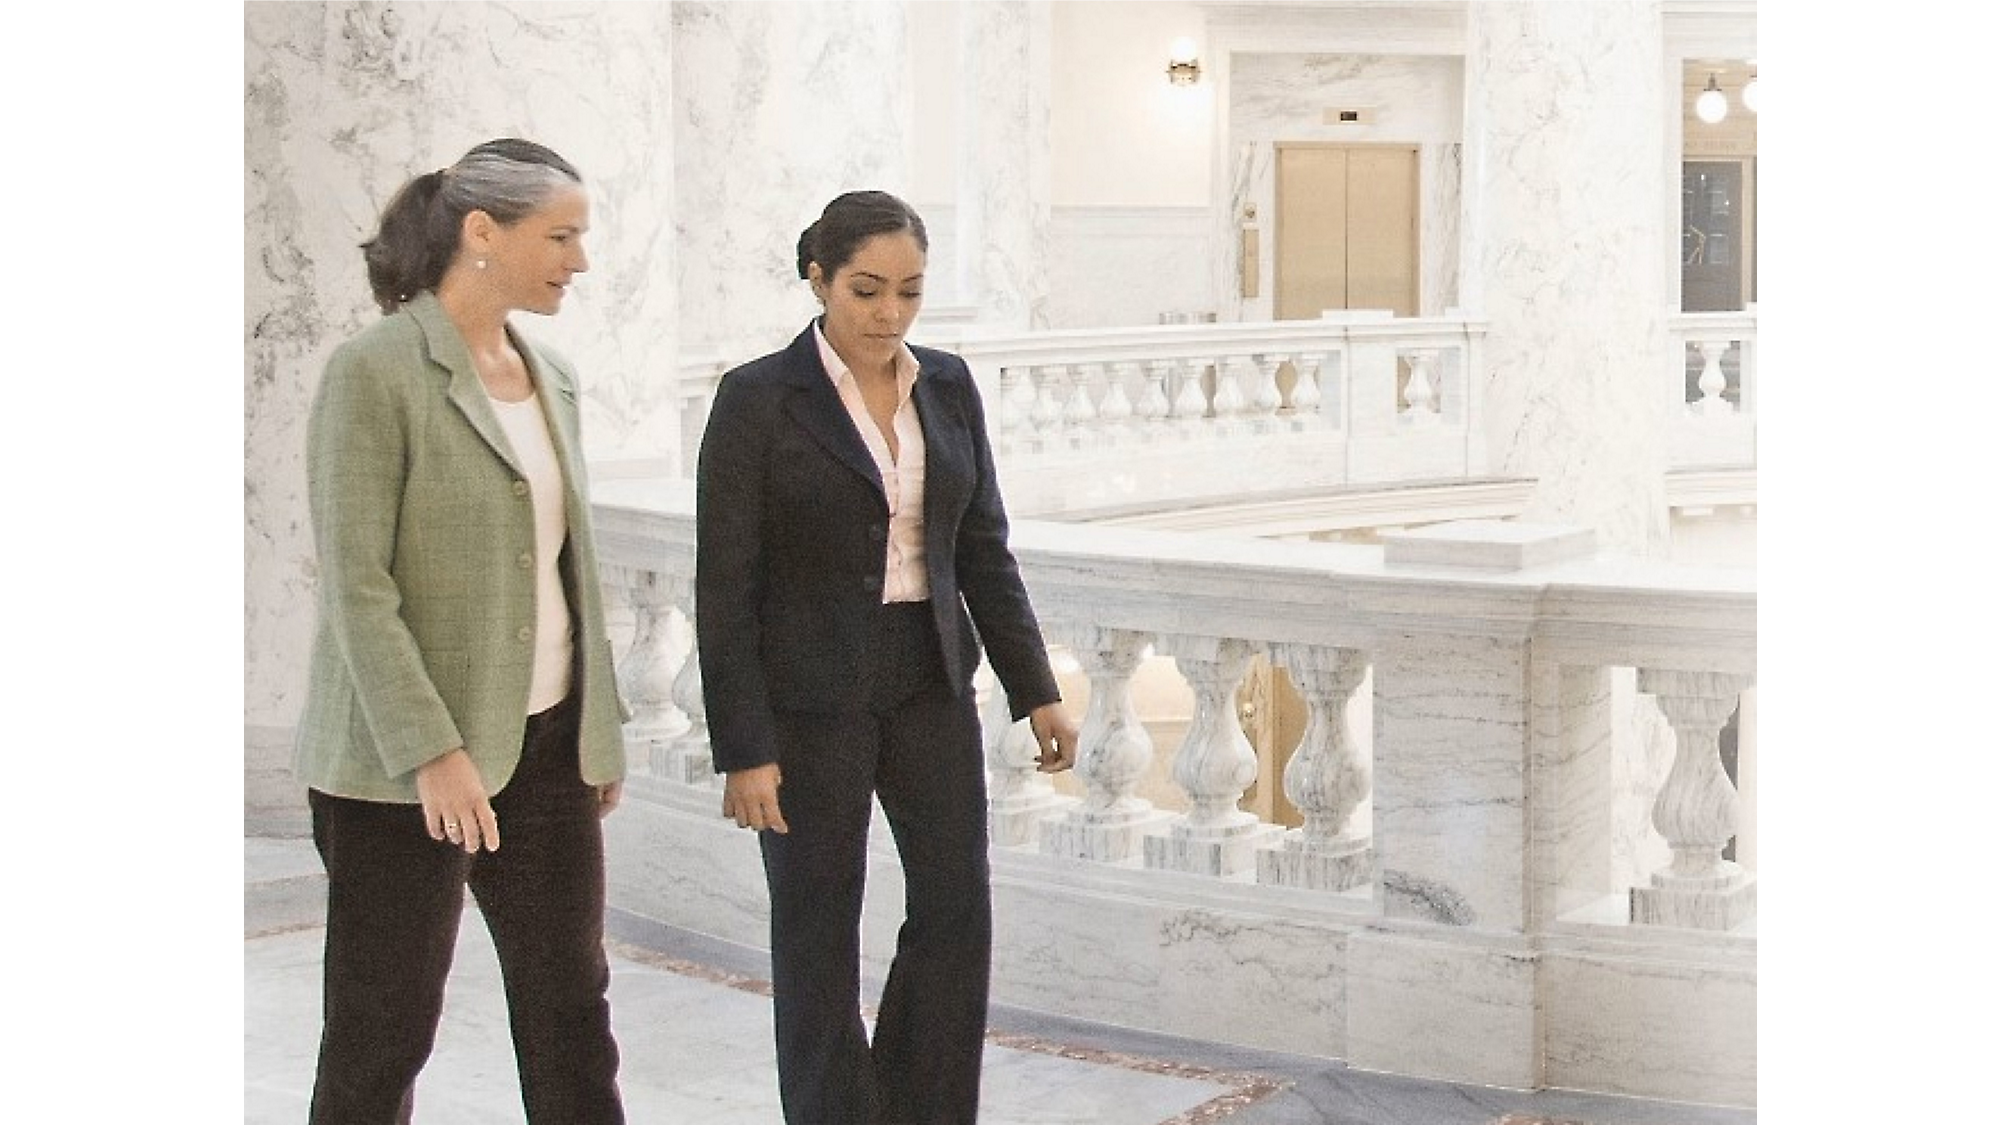 Zwei Frauen, die gehen und sich unterhalten, in einer mit Marmor ausgeschmückten Halle mit kunstvollen Balustraden im Hintergrund.